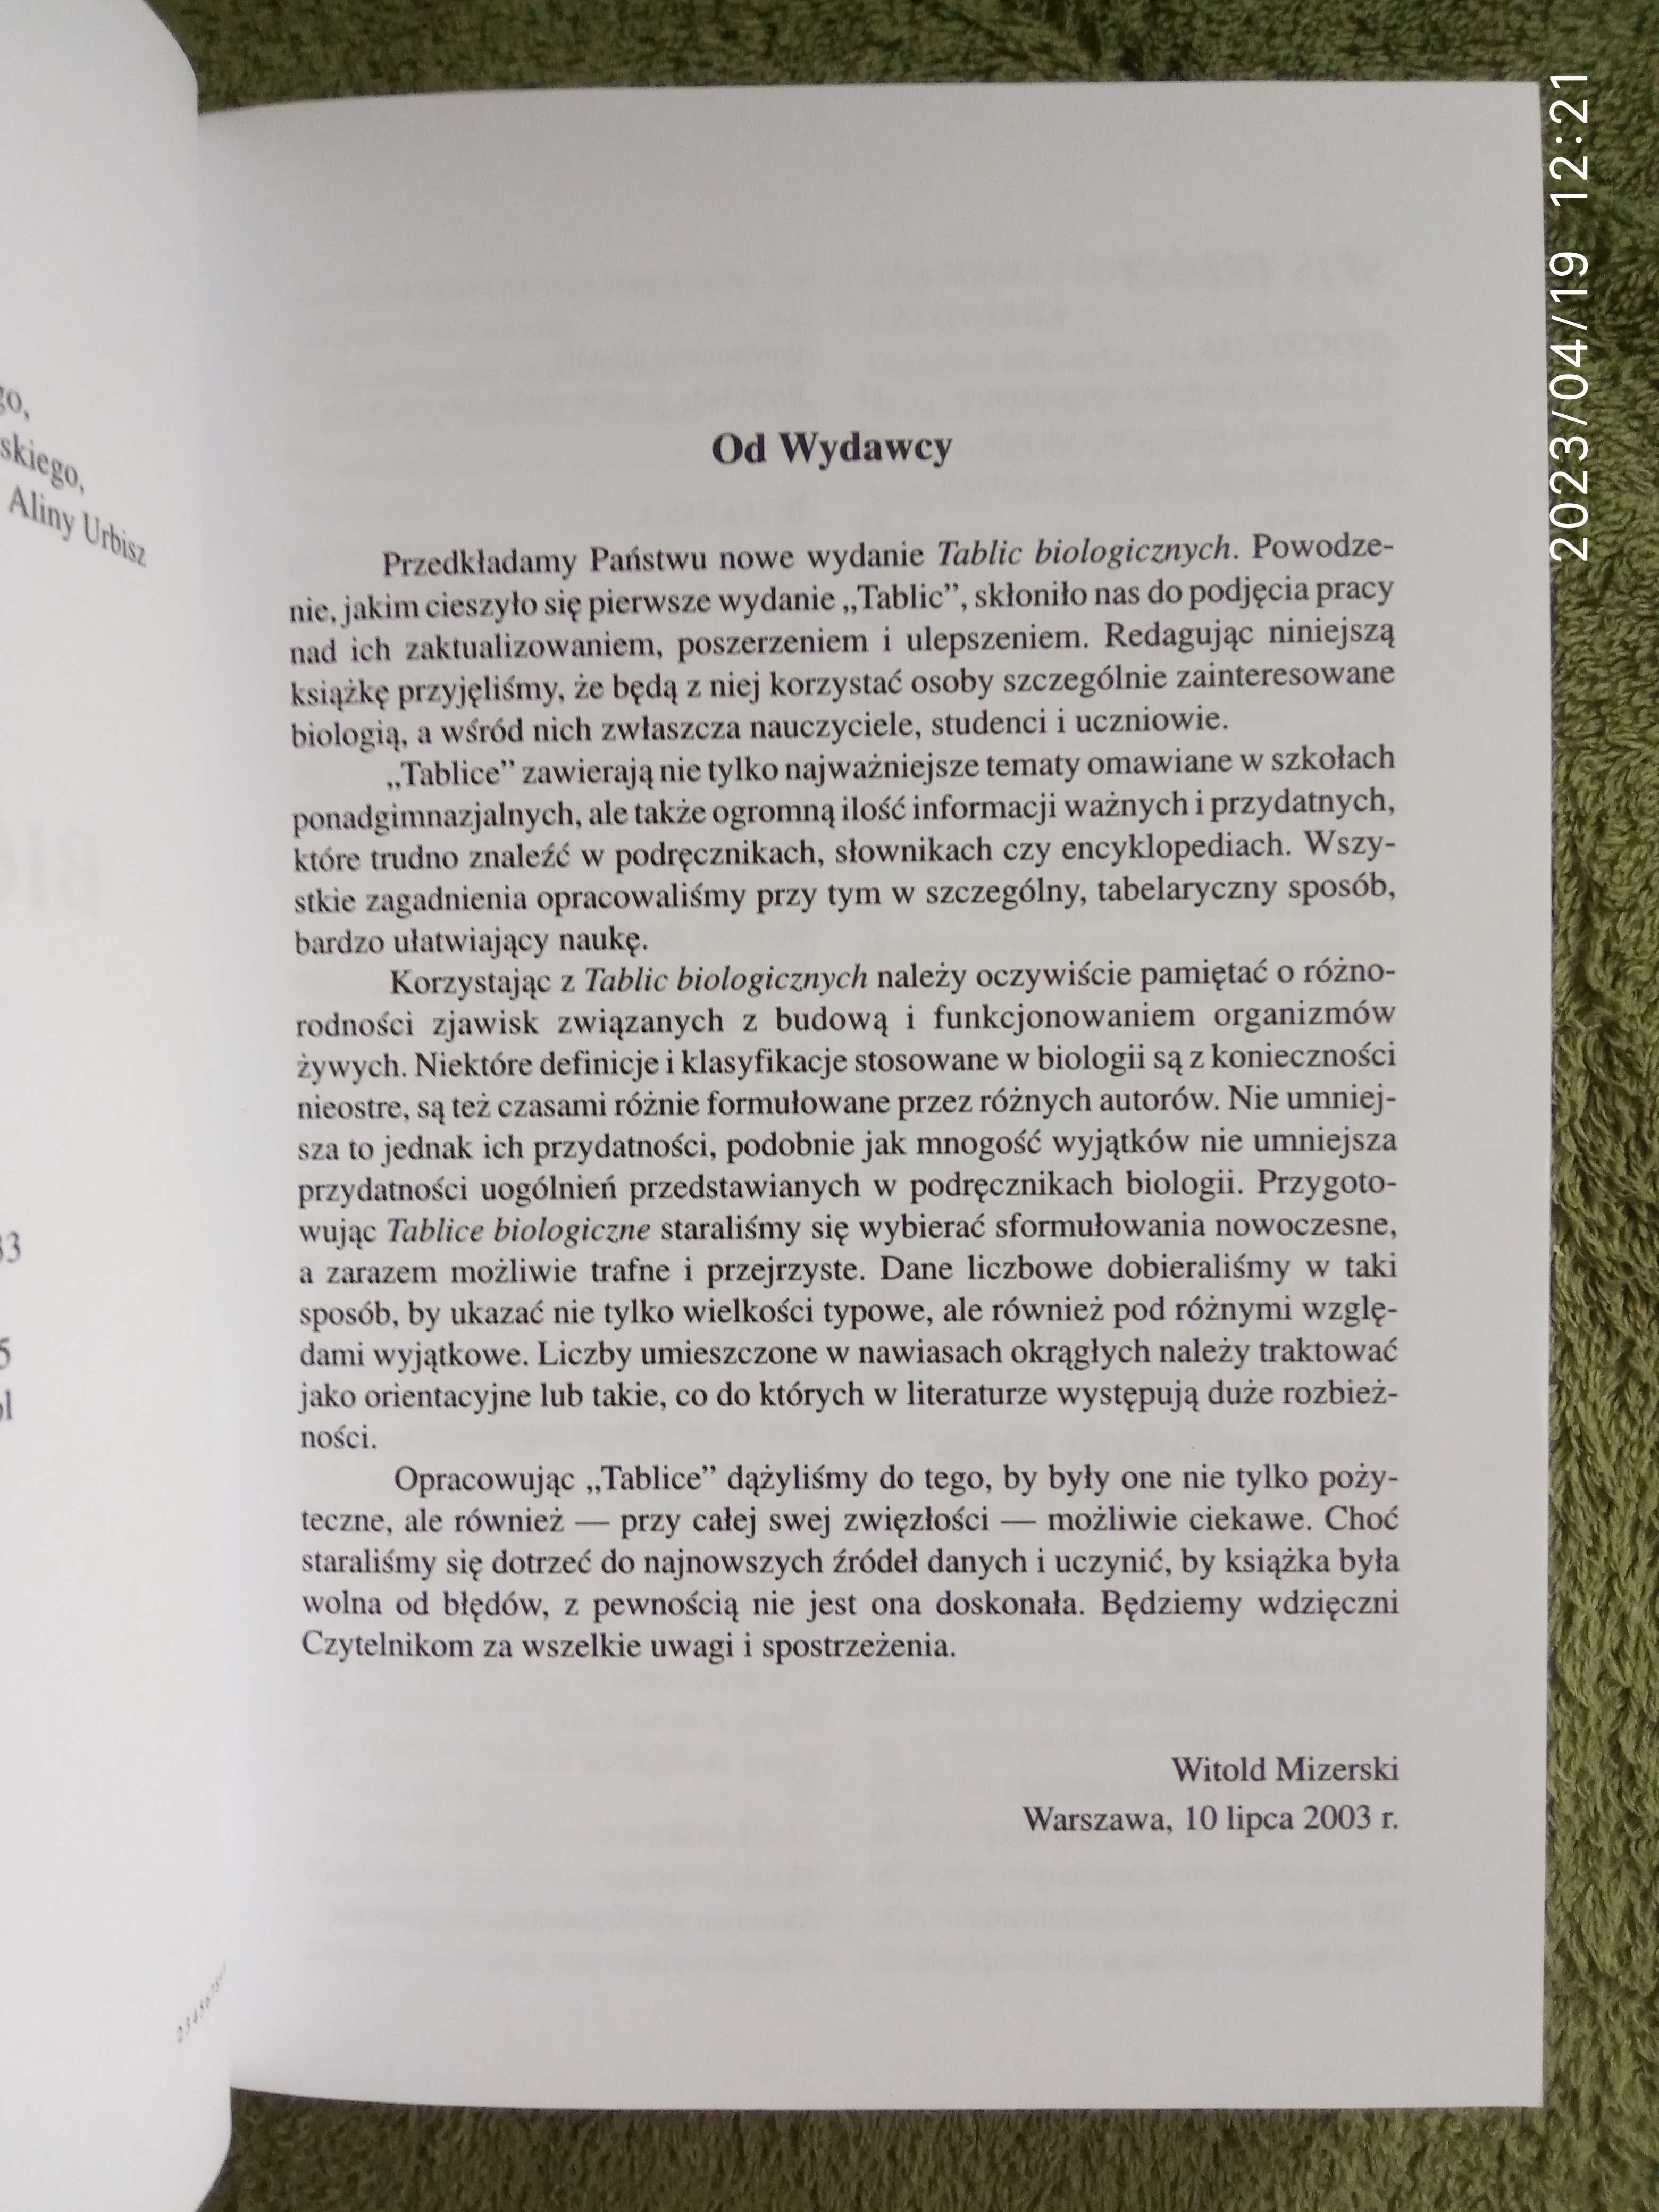 Tablice biologiczne pod red Mizerski Witold , obszerna pełna wersja